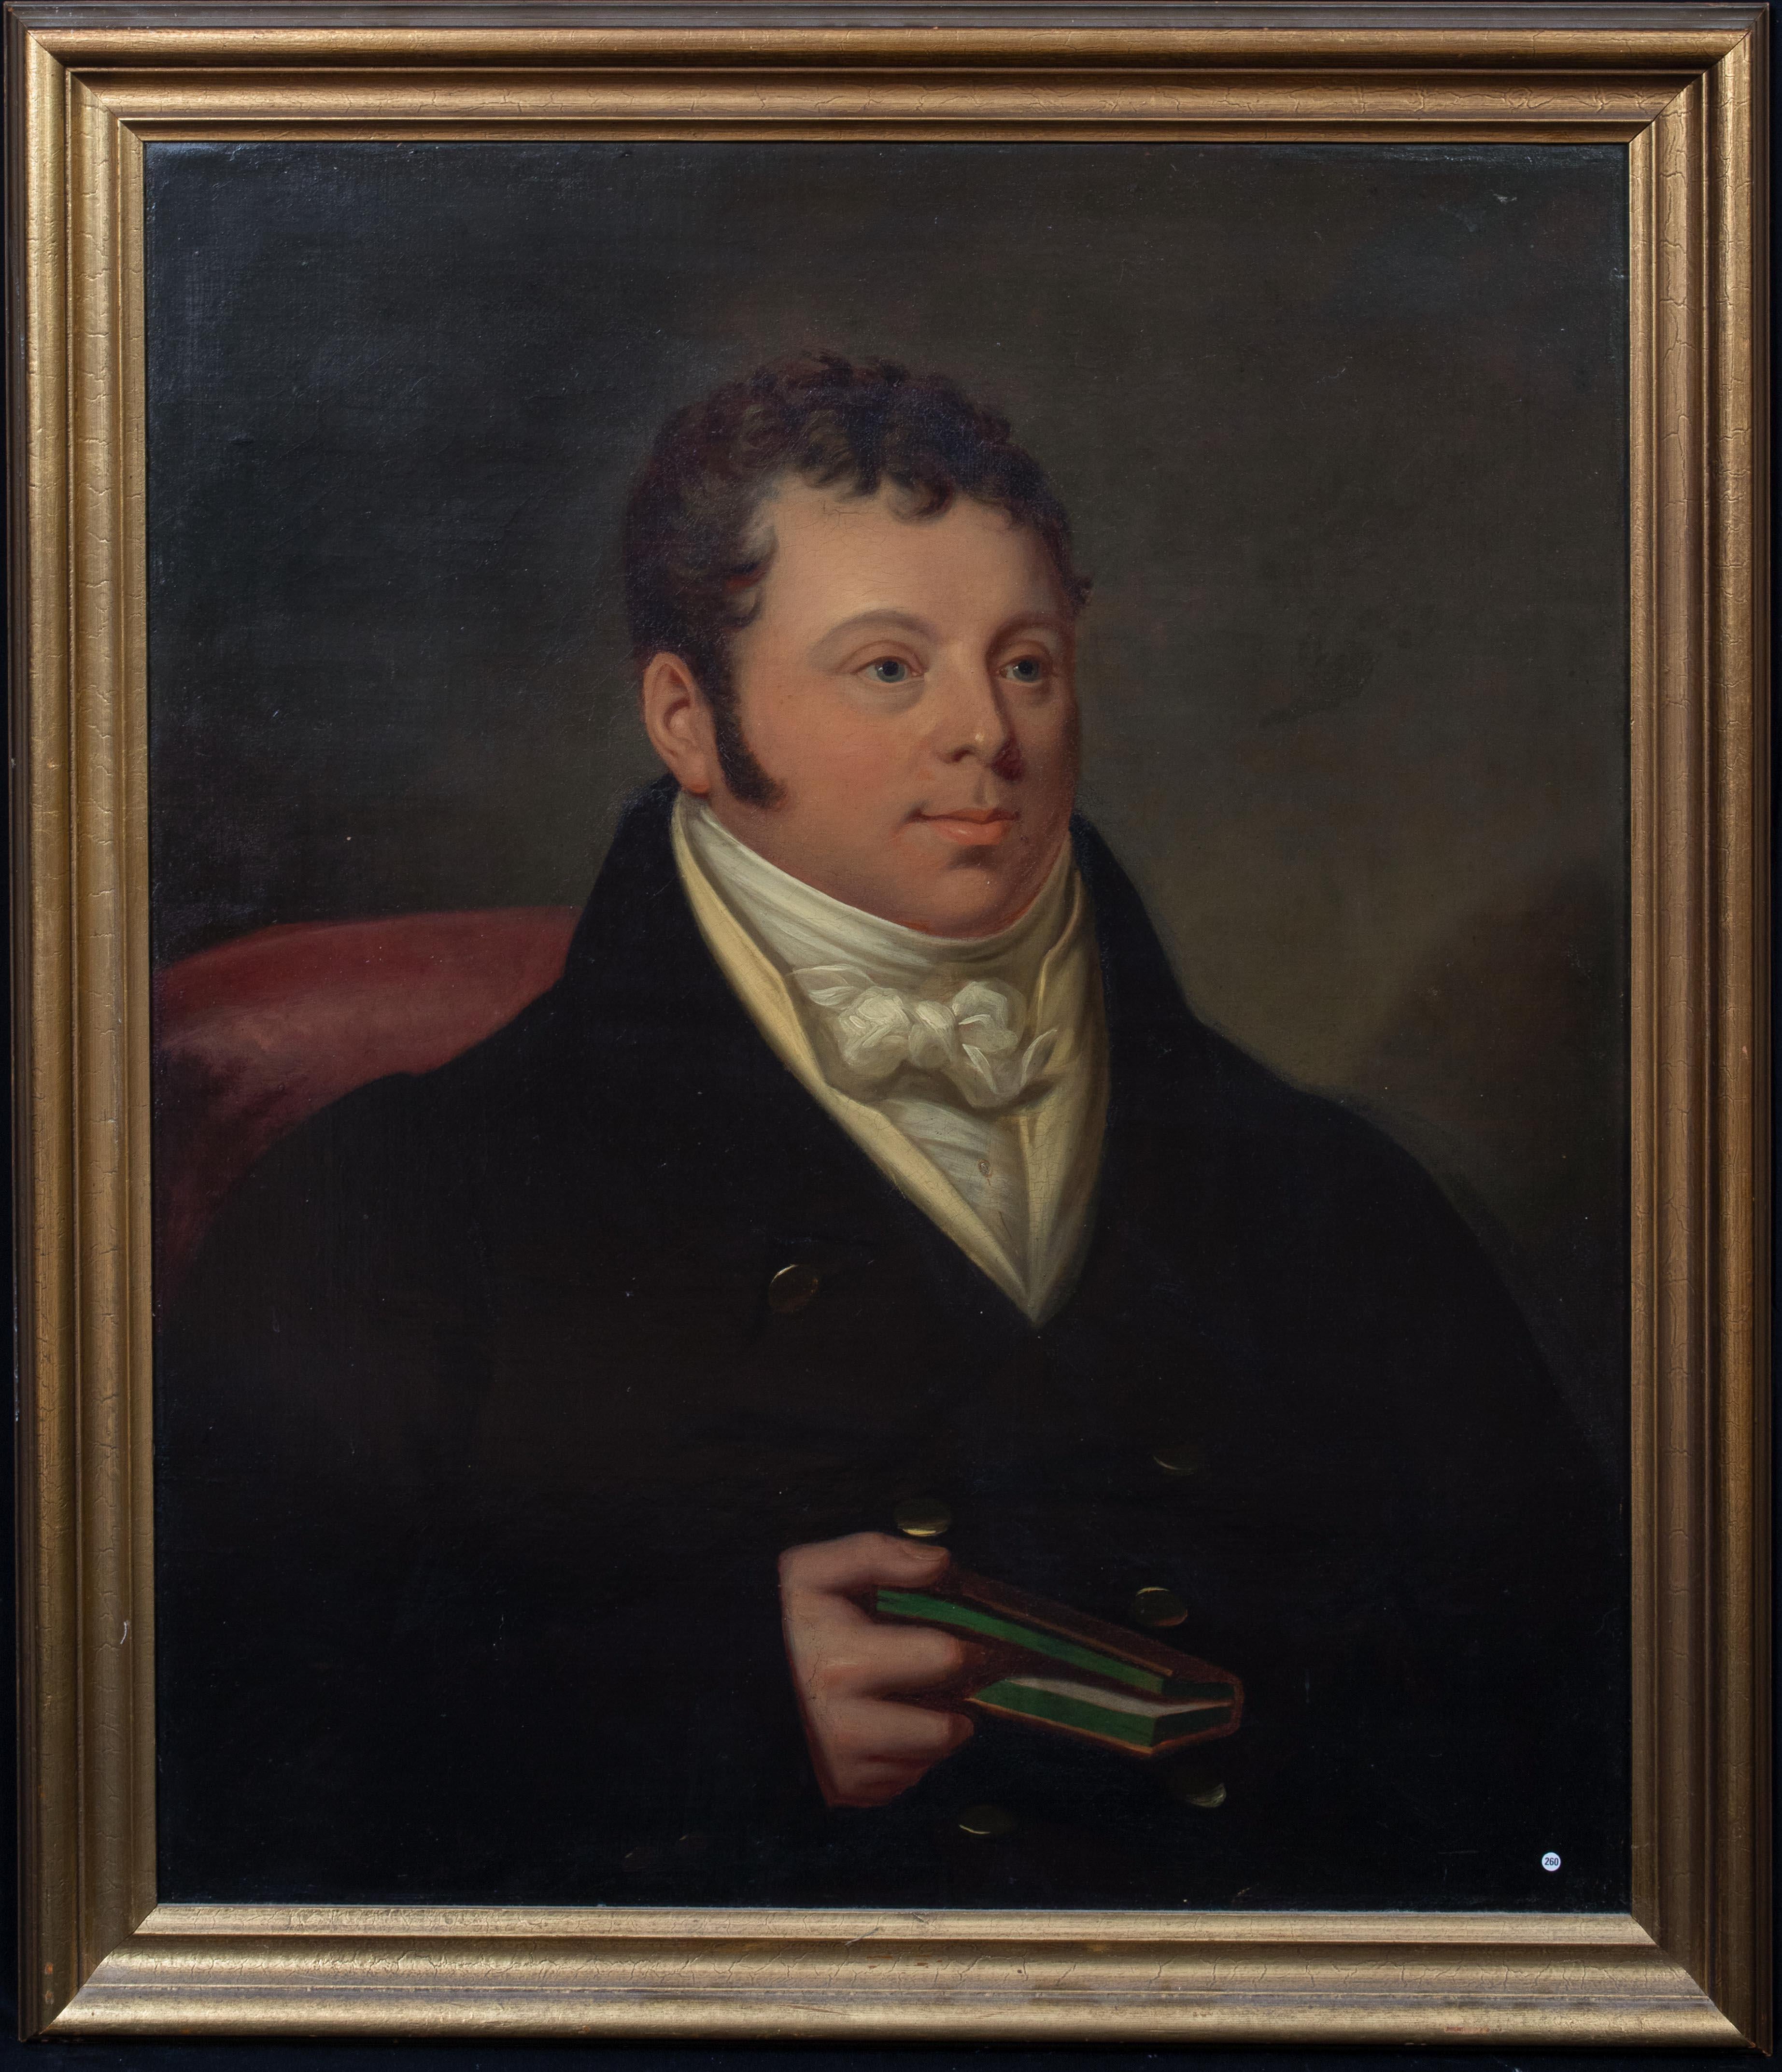 Unknown Portrait Painting – Porträt von Edward Dyer, Kasauli Whiskey Distillery, 19. Jahrhundert